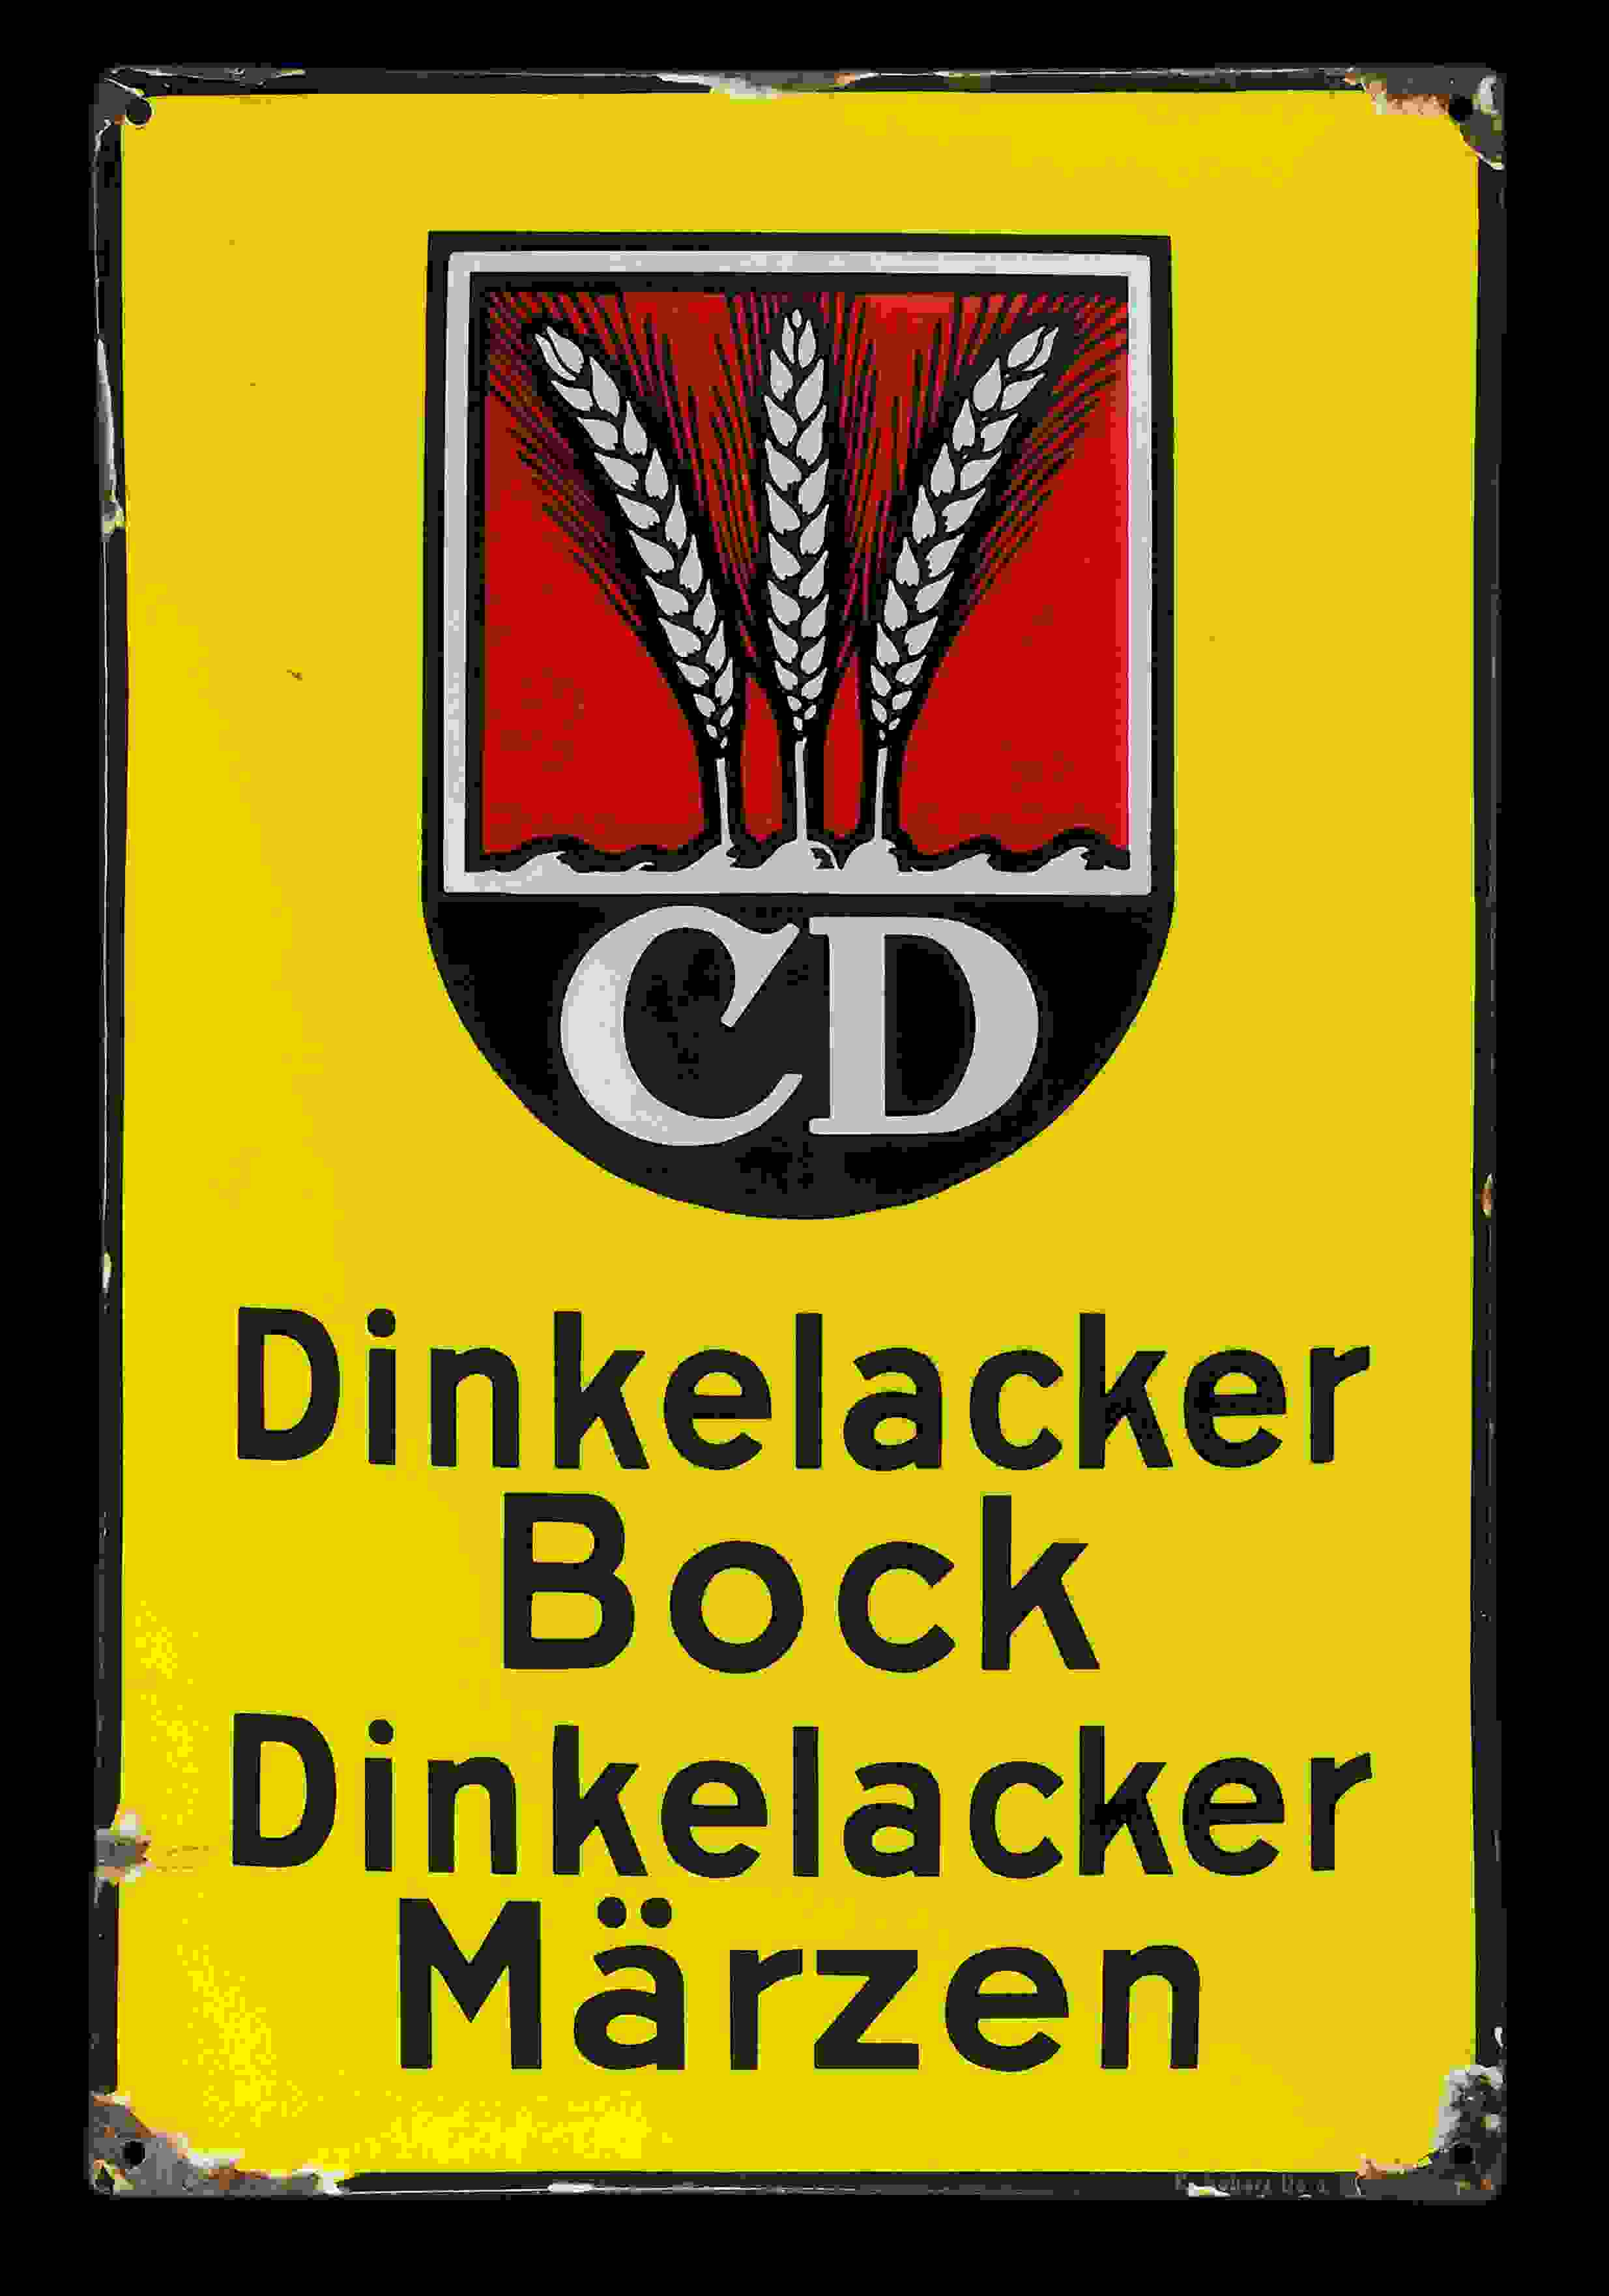 Dinkelacker CD 